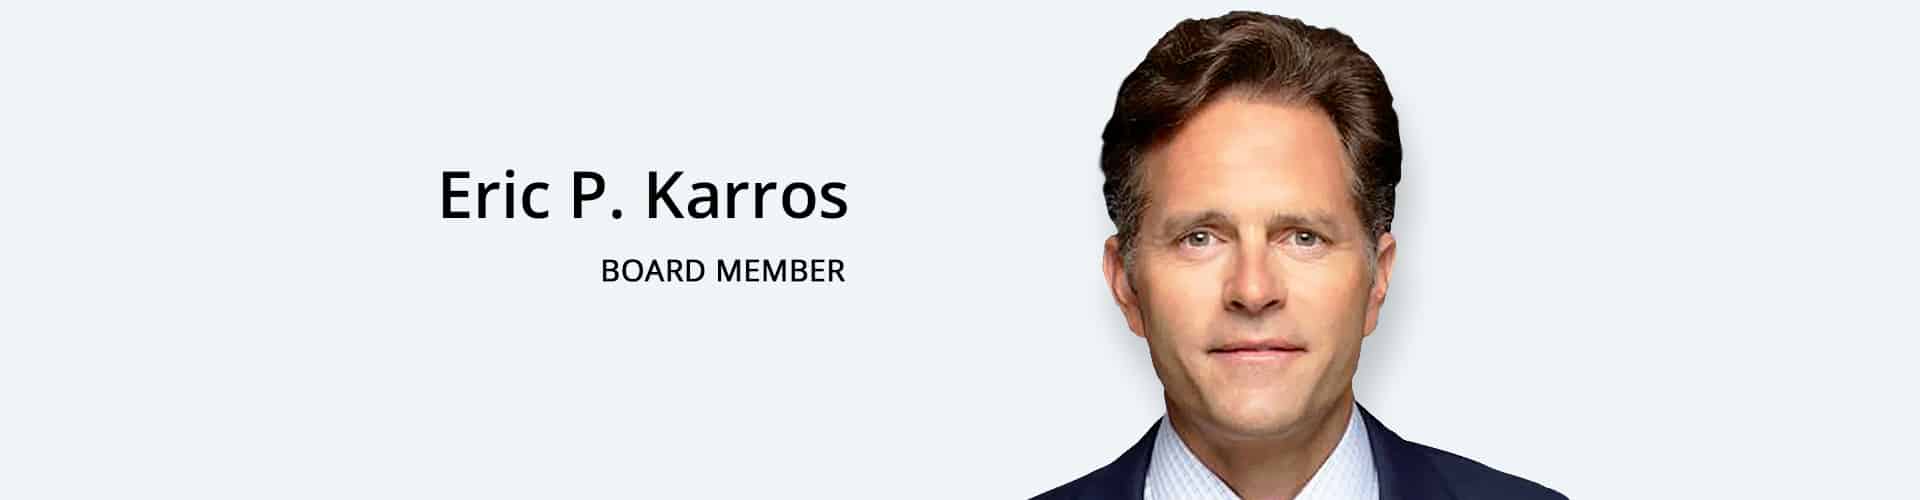 Eric P. Karros-Board Member